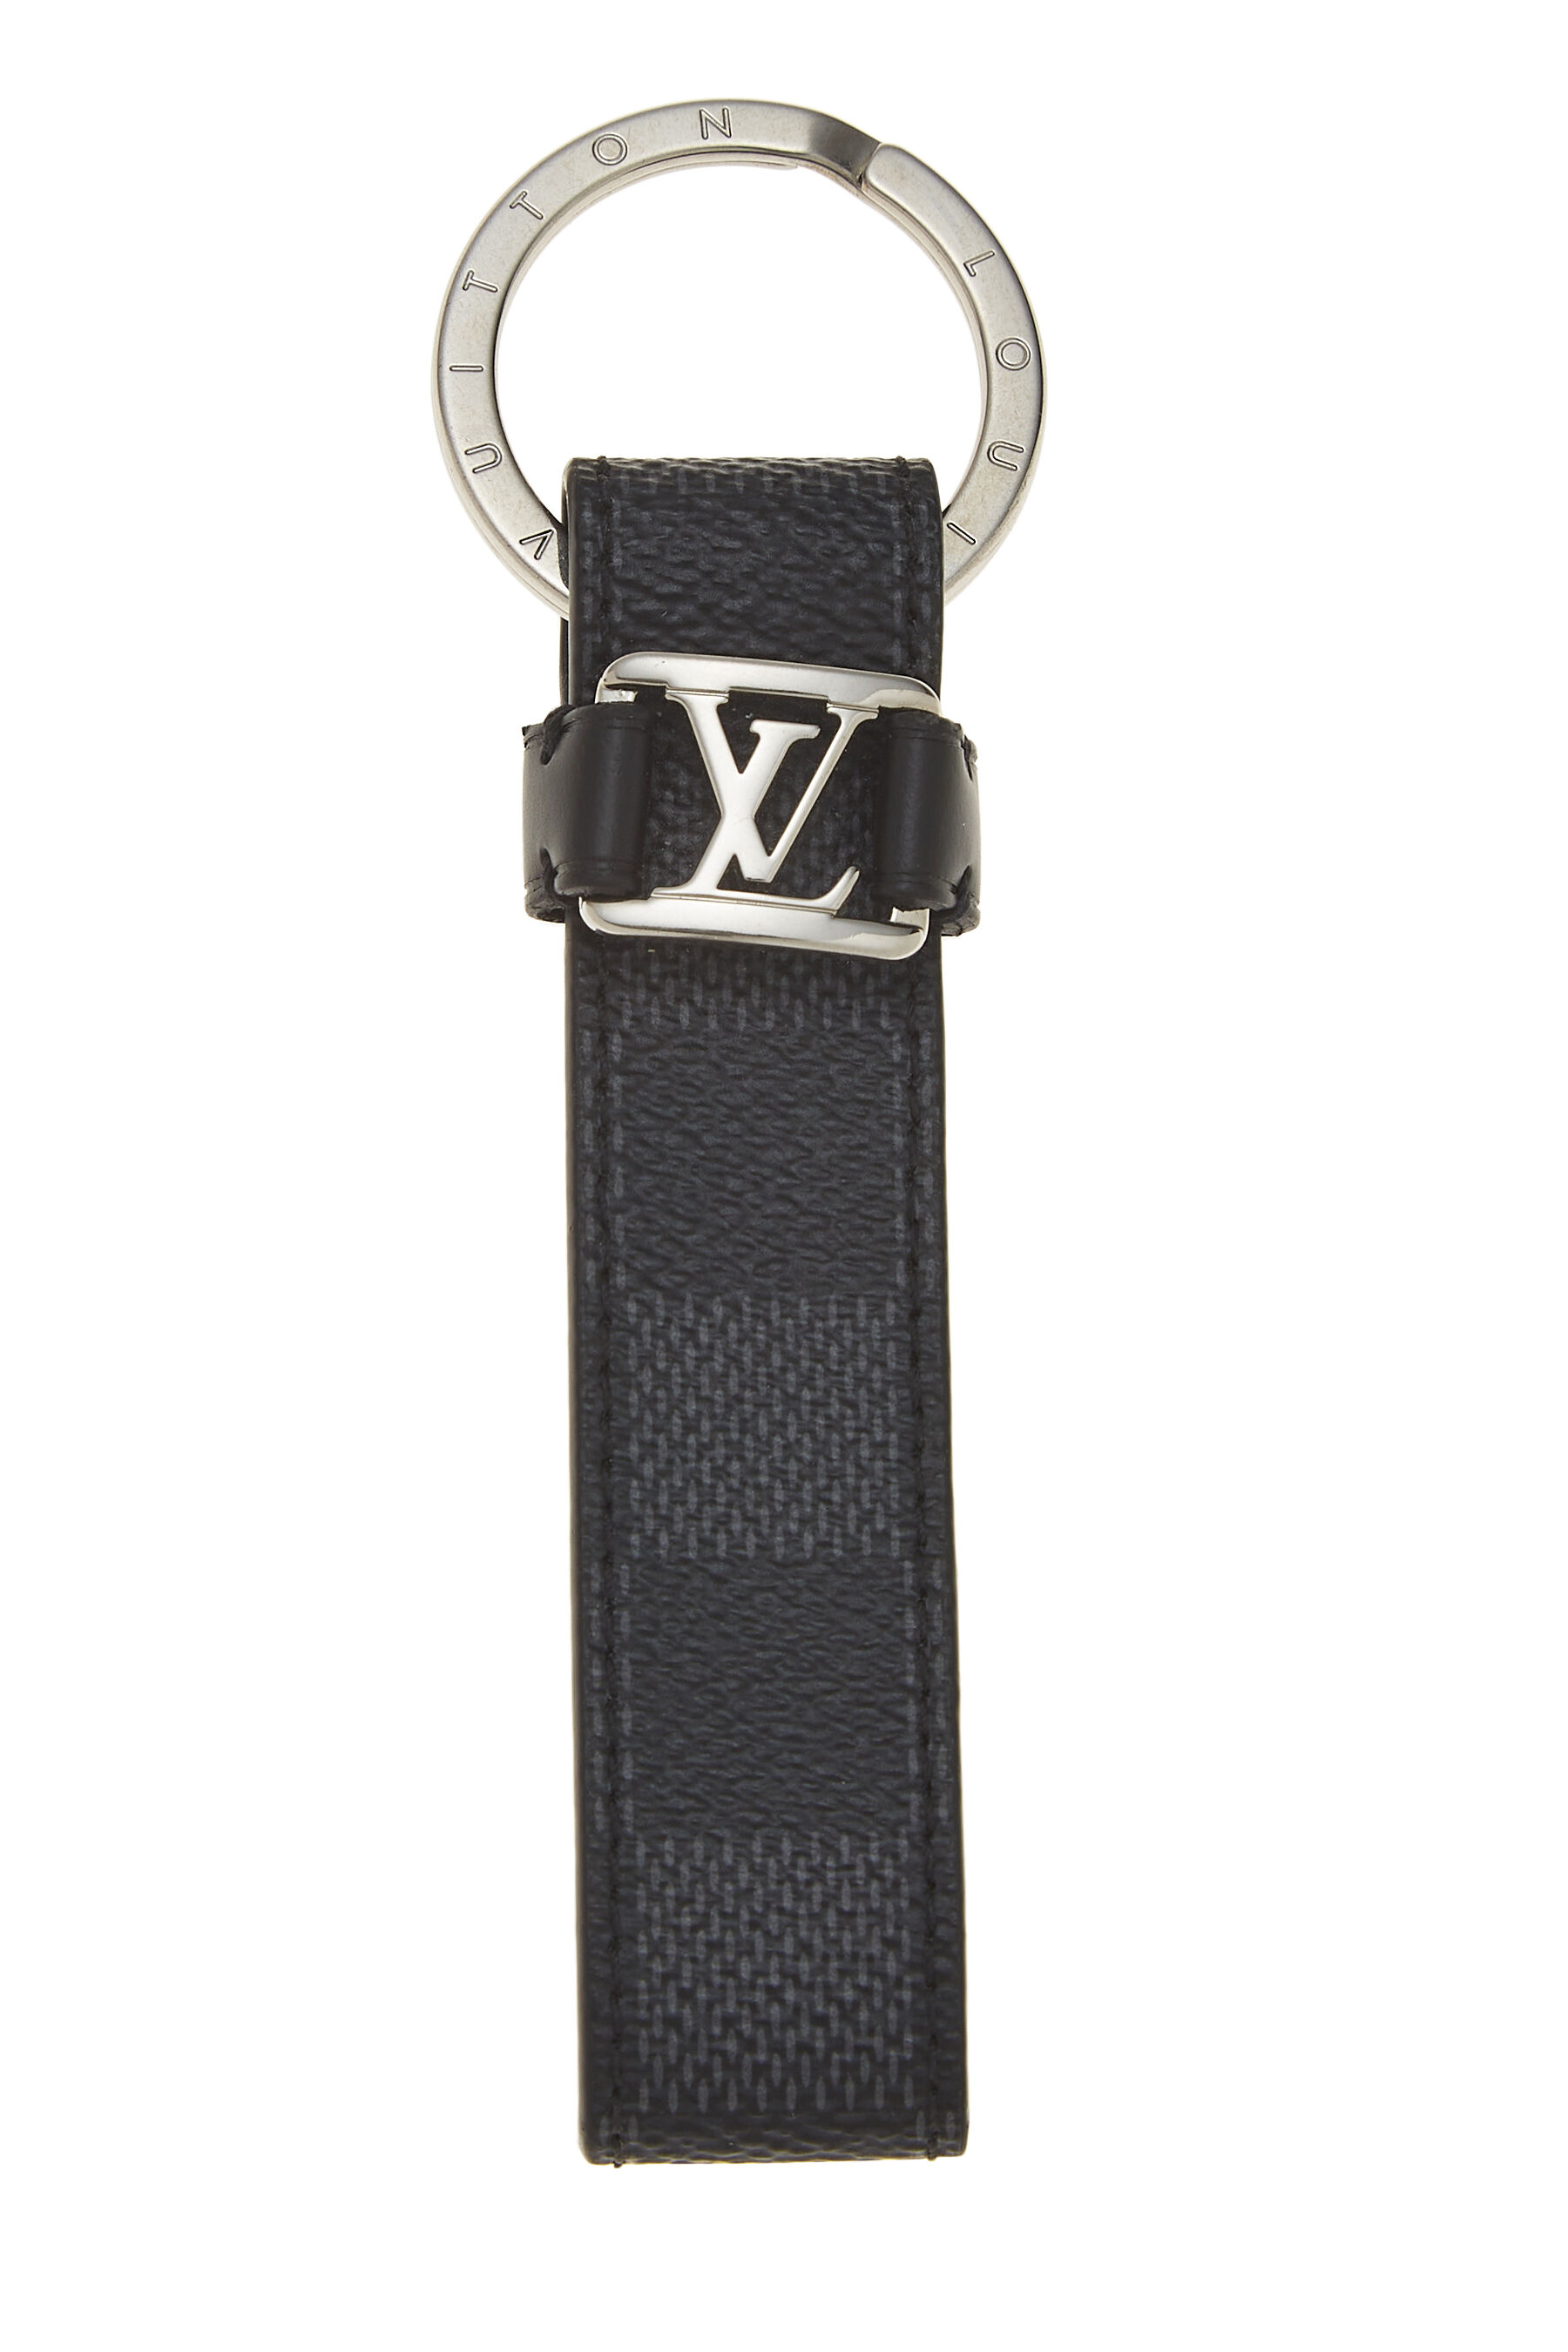 Louis Vuitton, Accessories, Louis Vuitton Key Pouch Graphite